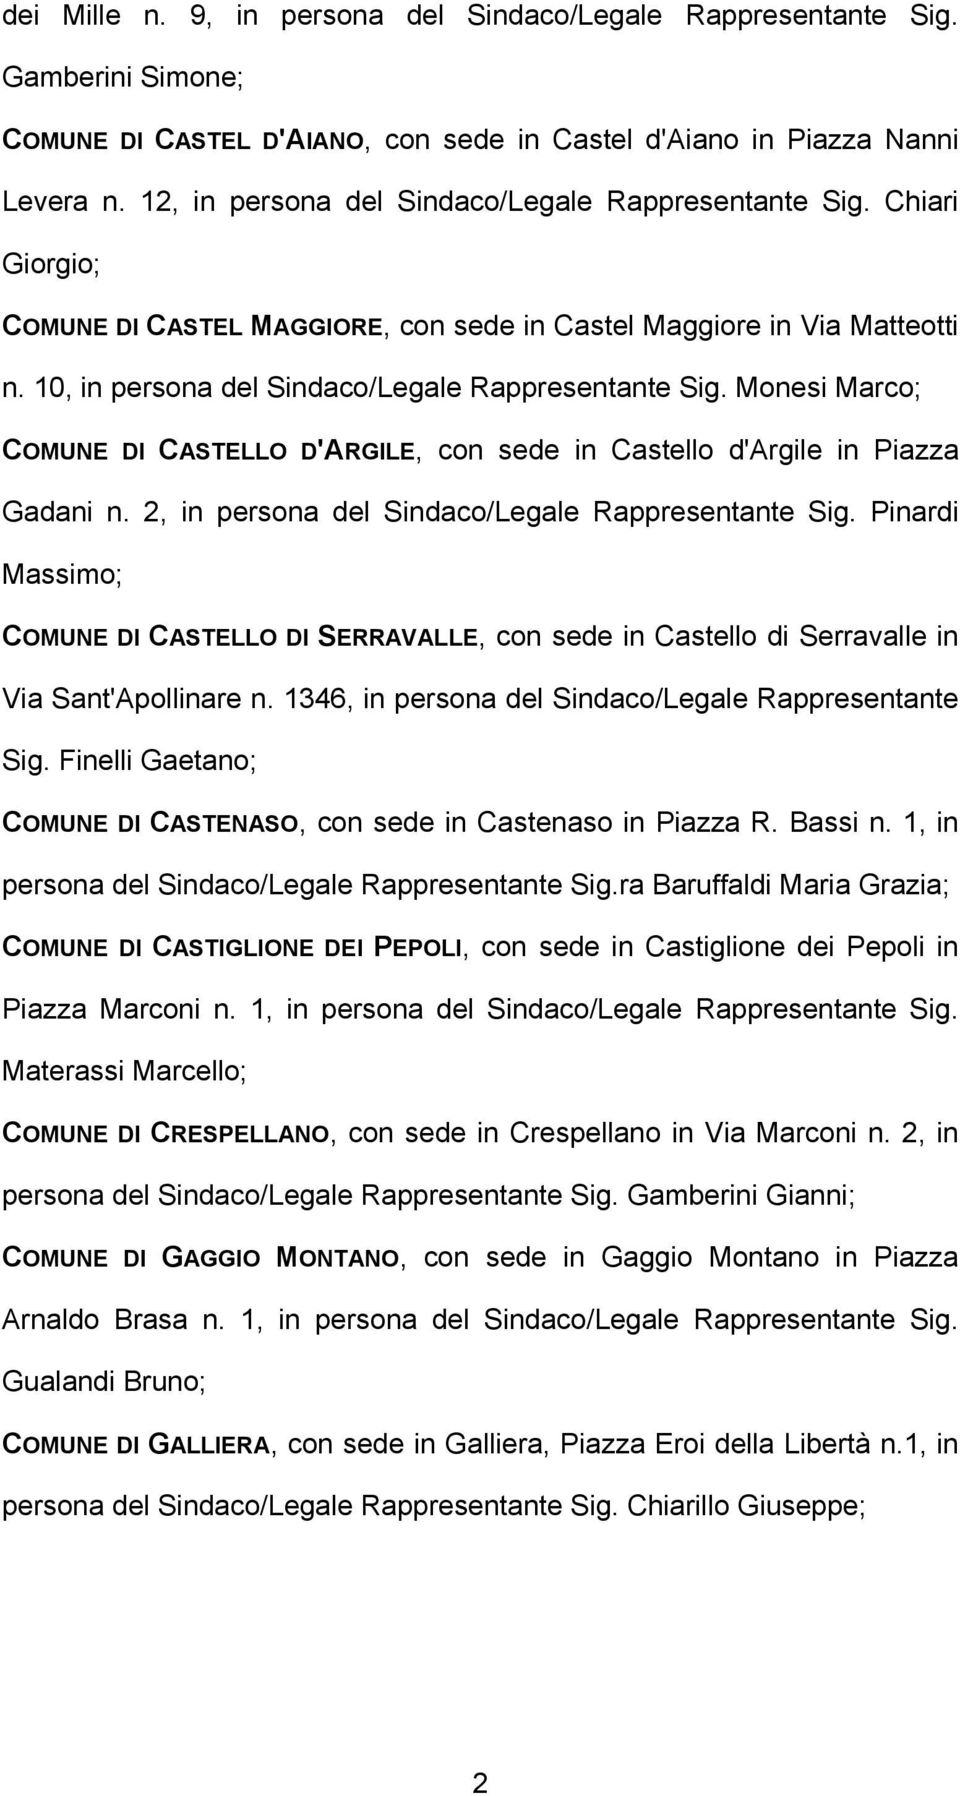 Monesi Marco; COMUNE DI CASTELLO D'ARGILE, con sede in Castello d'argile in Piazza Gadani n. 2, in persona del Sindaco/Legale Rappresentante Sig.